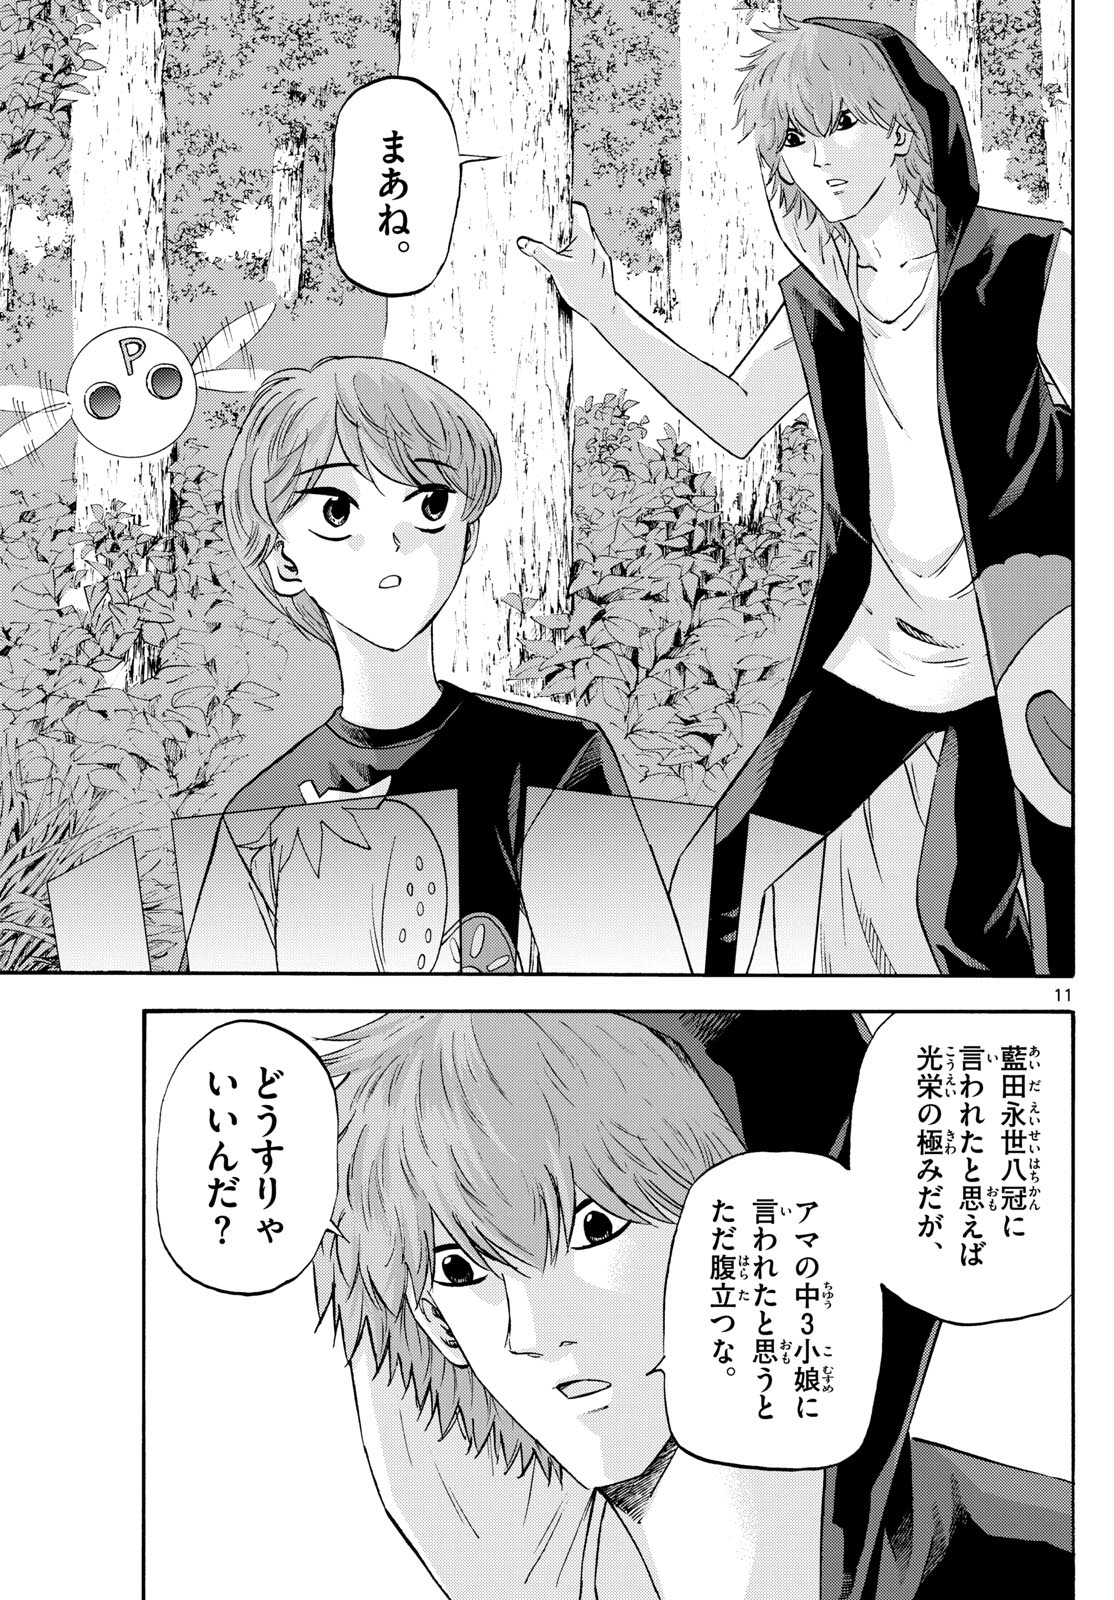 Tatsu to Ichigo - Chapter 195 - Page 11